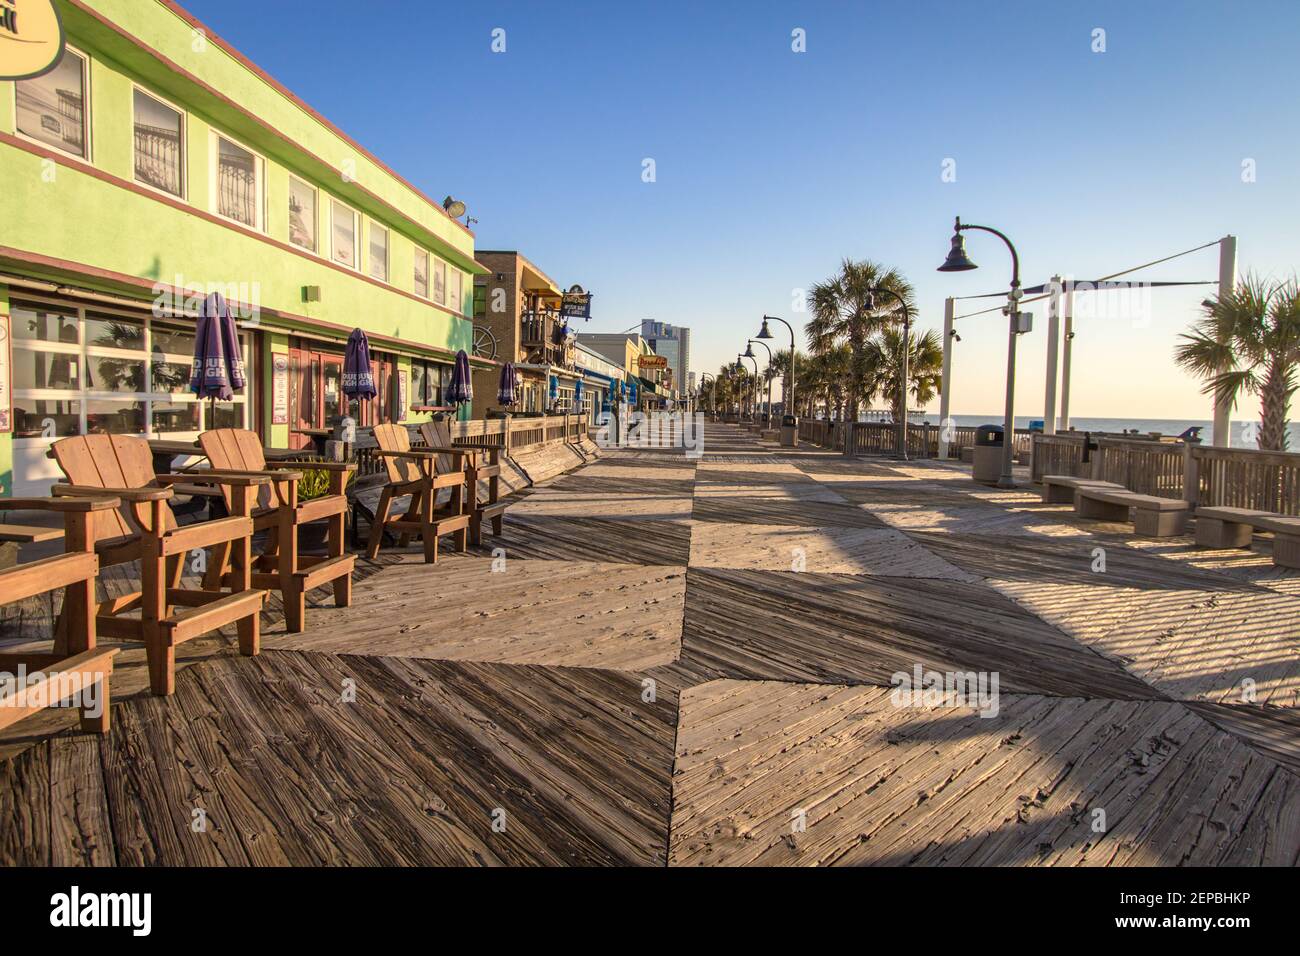 Mrytle Beach, South Carolina, USA - 25. Februar 2021: Blick auf den Myrtle Beach Boardwalk mit leeren Essbereichen im Freien, die für Gäste eingerichtet sind. Stockfoto